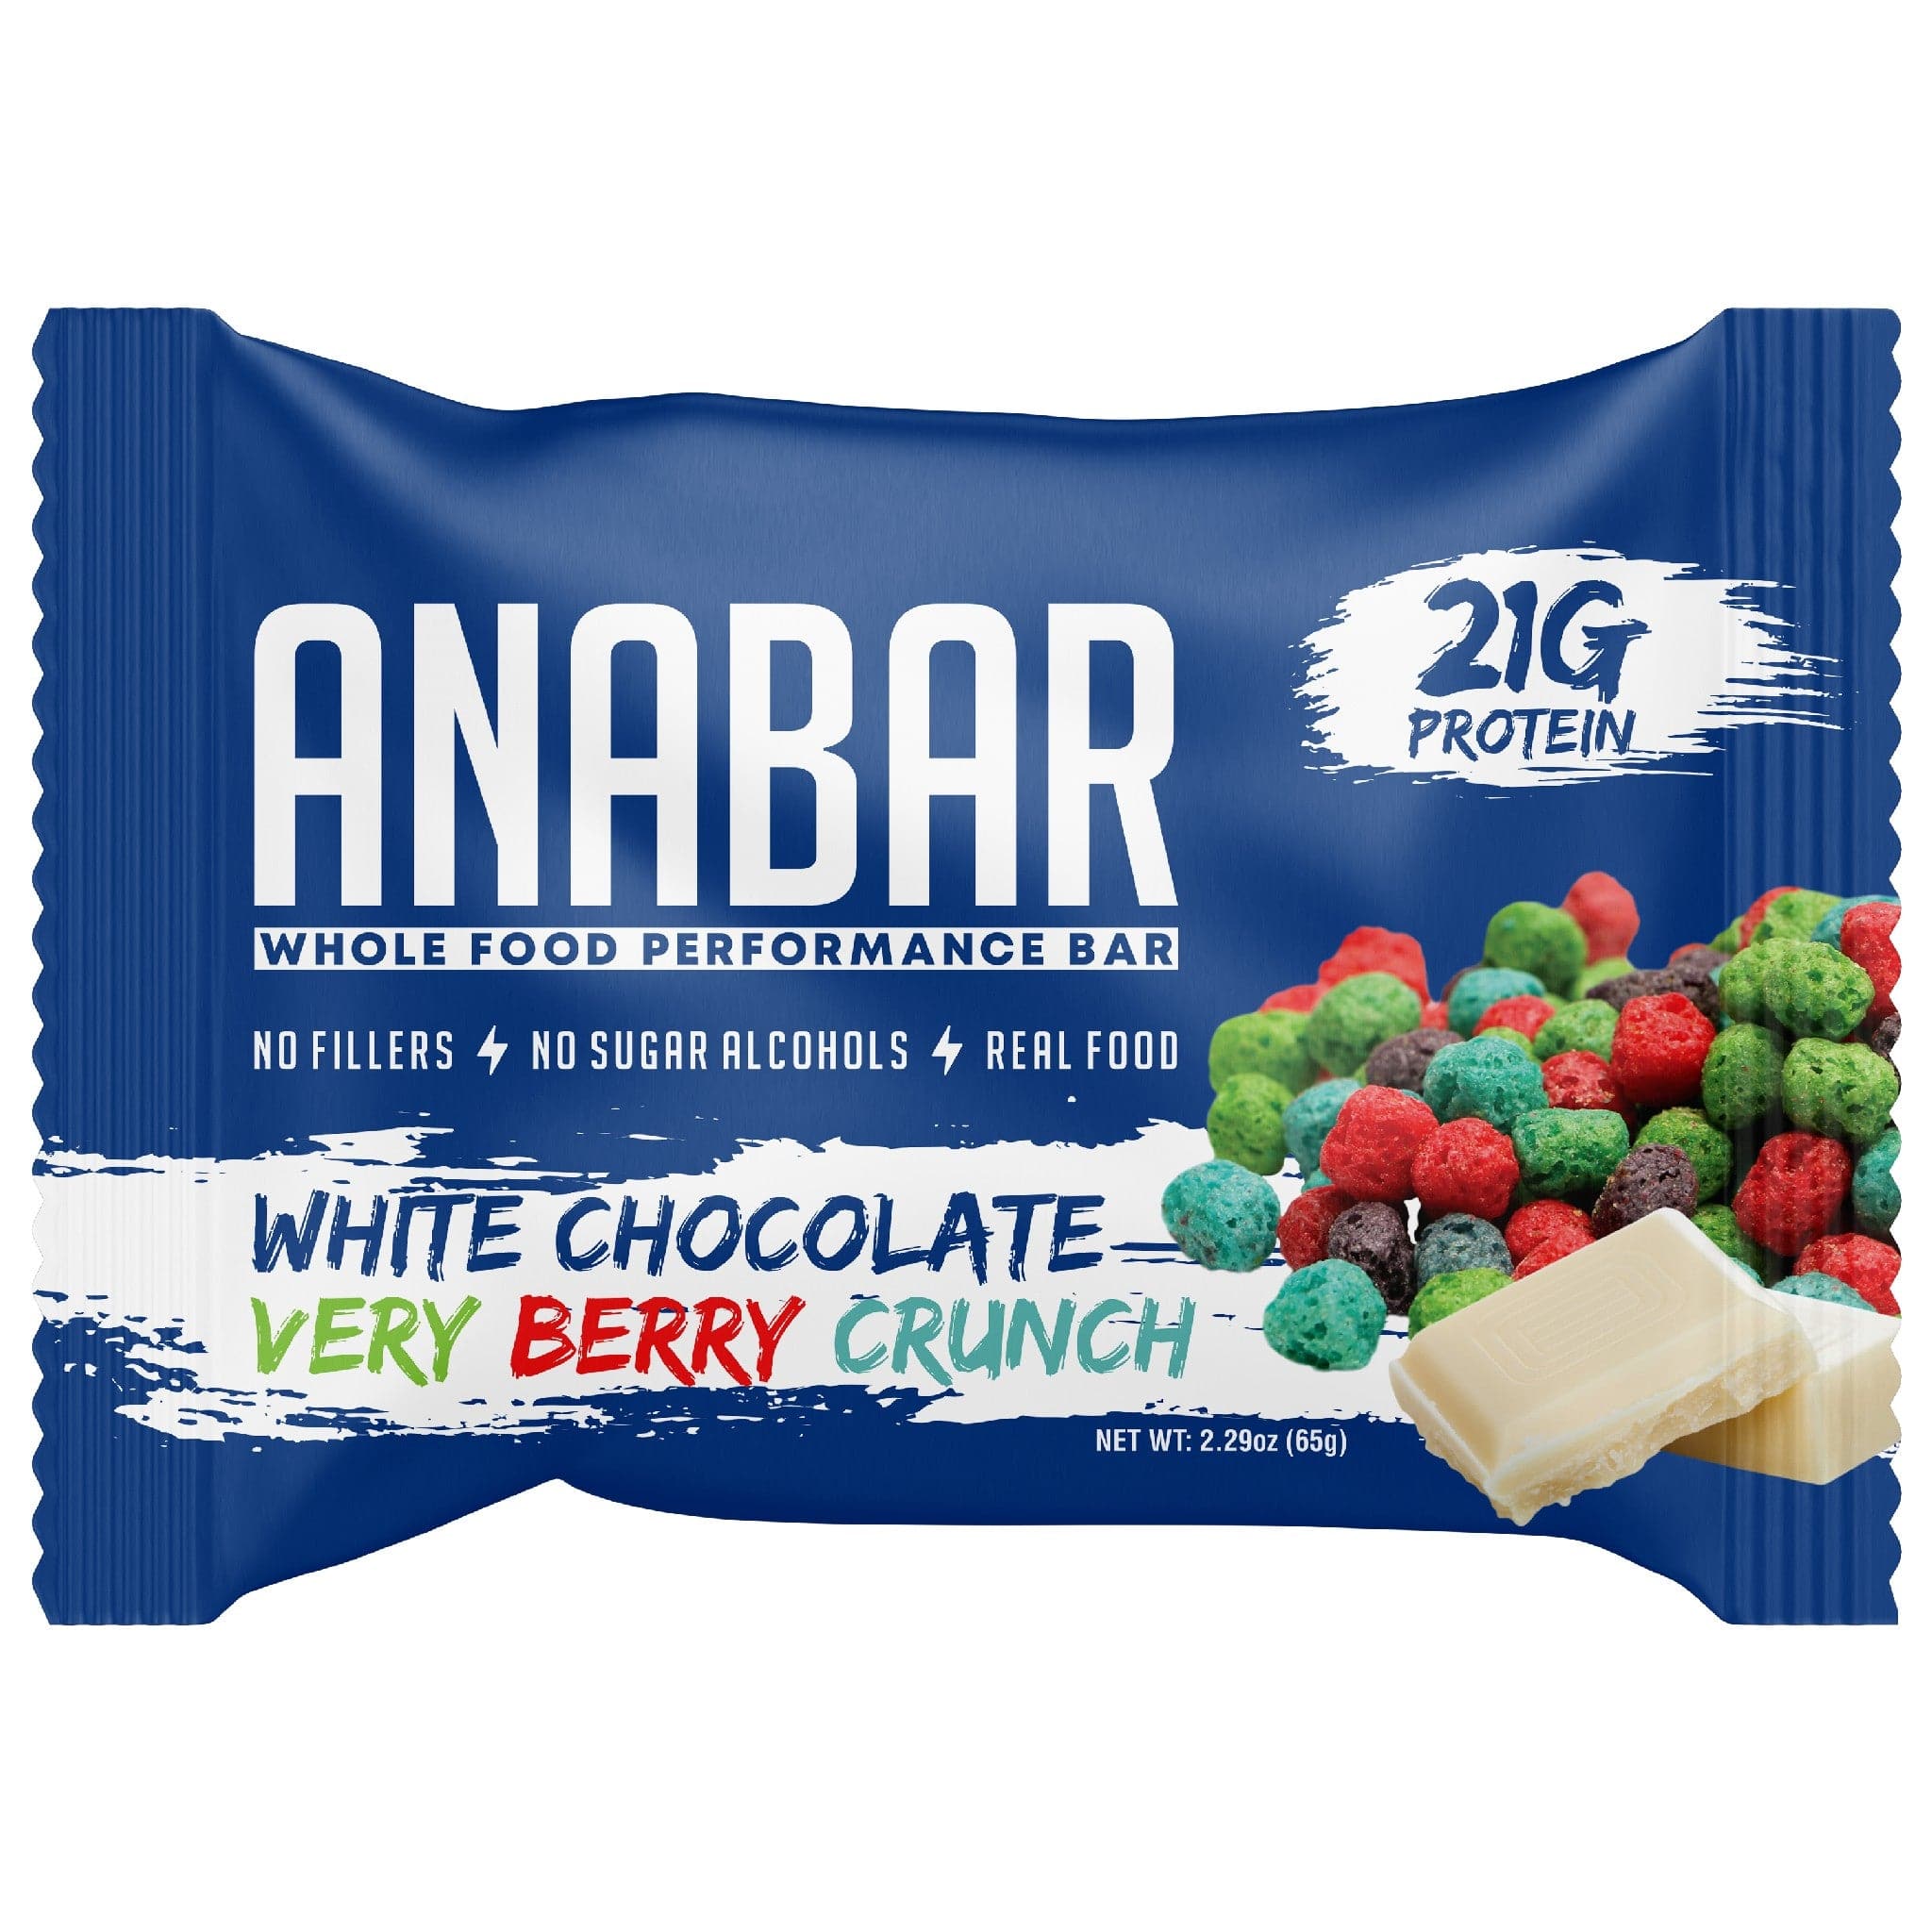 Anabar Protein Bar single